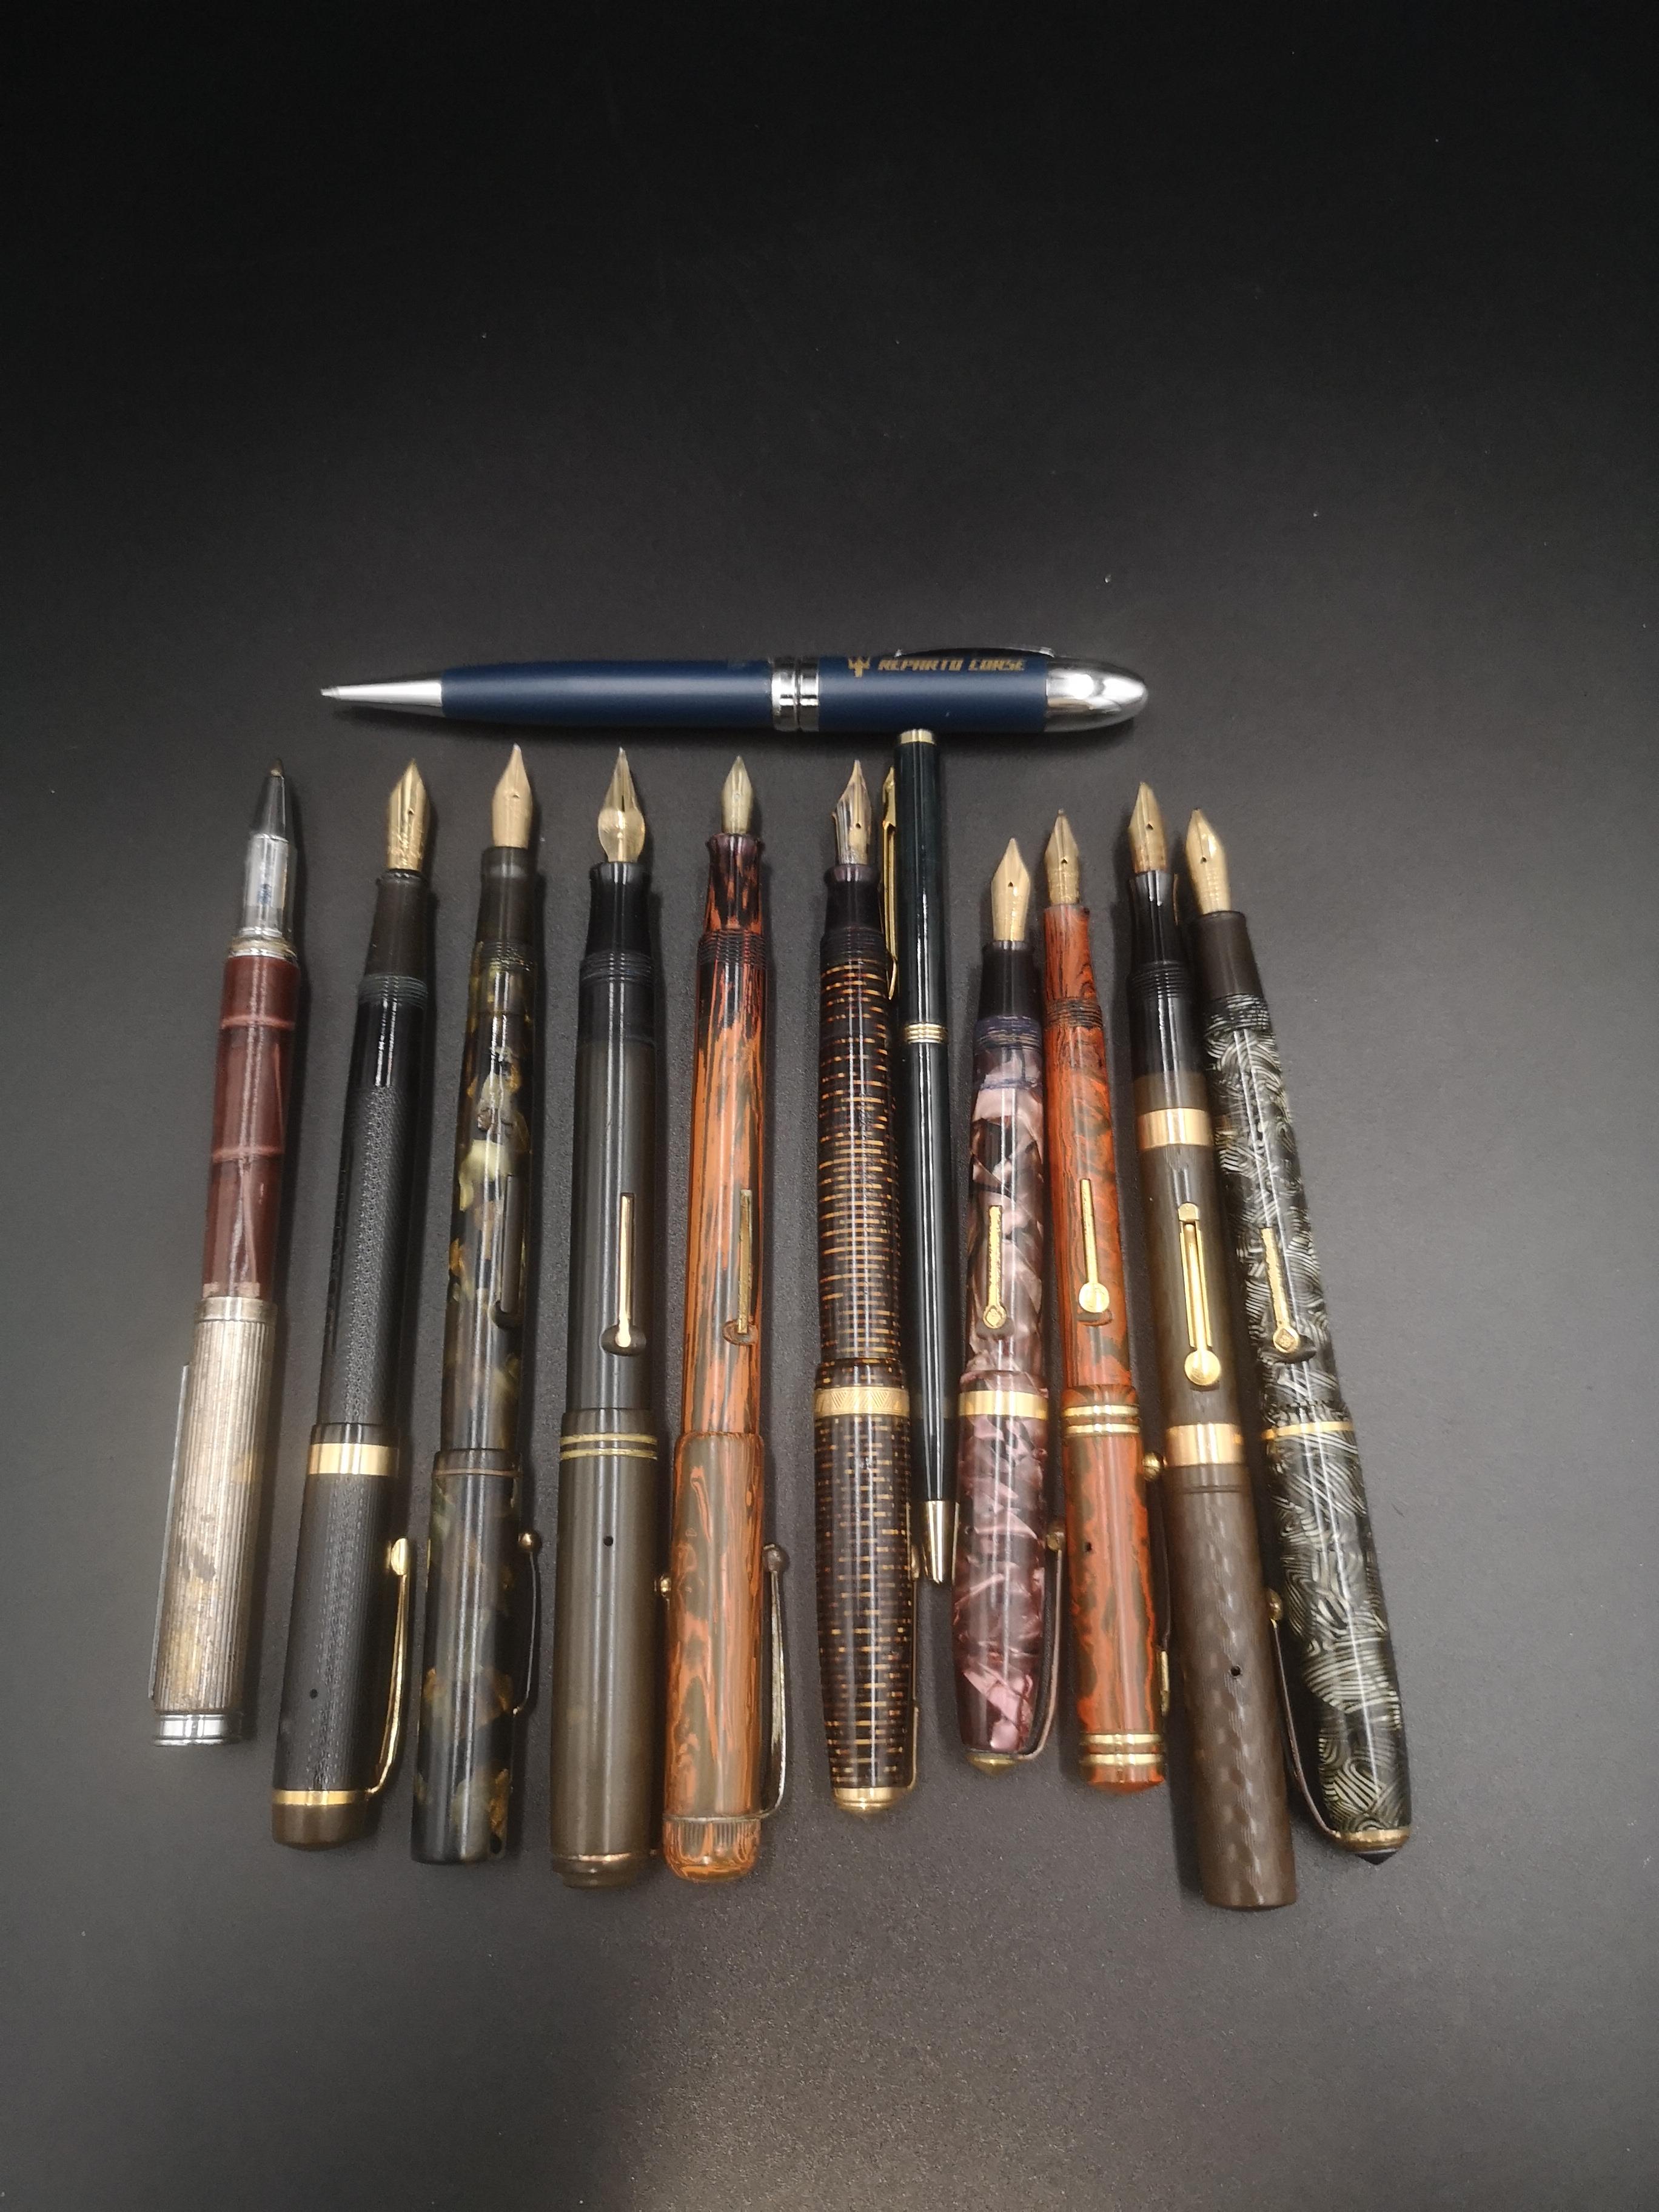 Collection of ten fountain pens